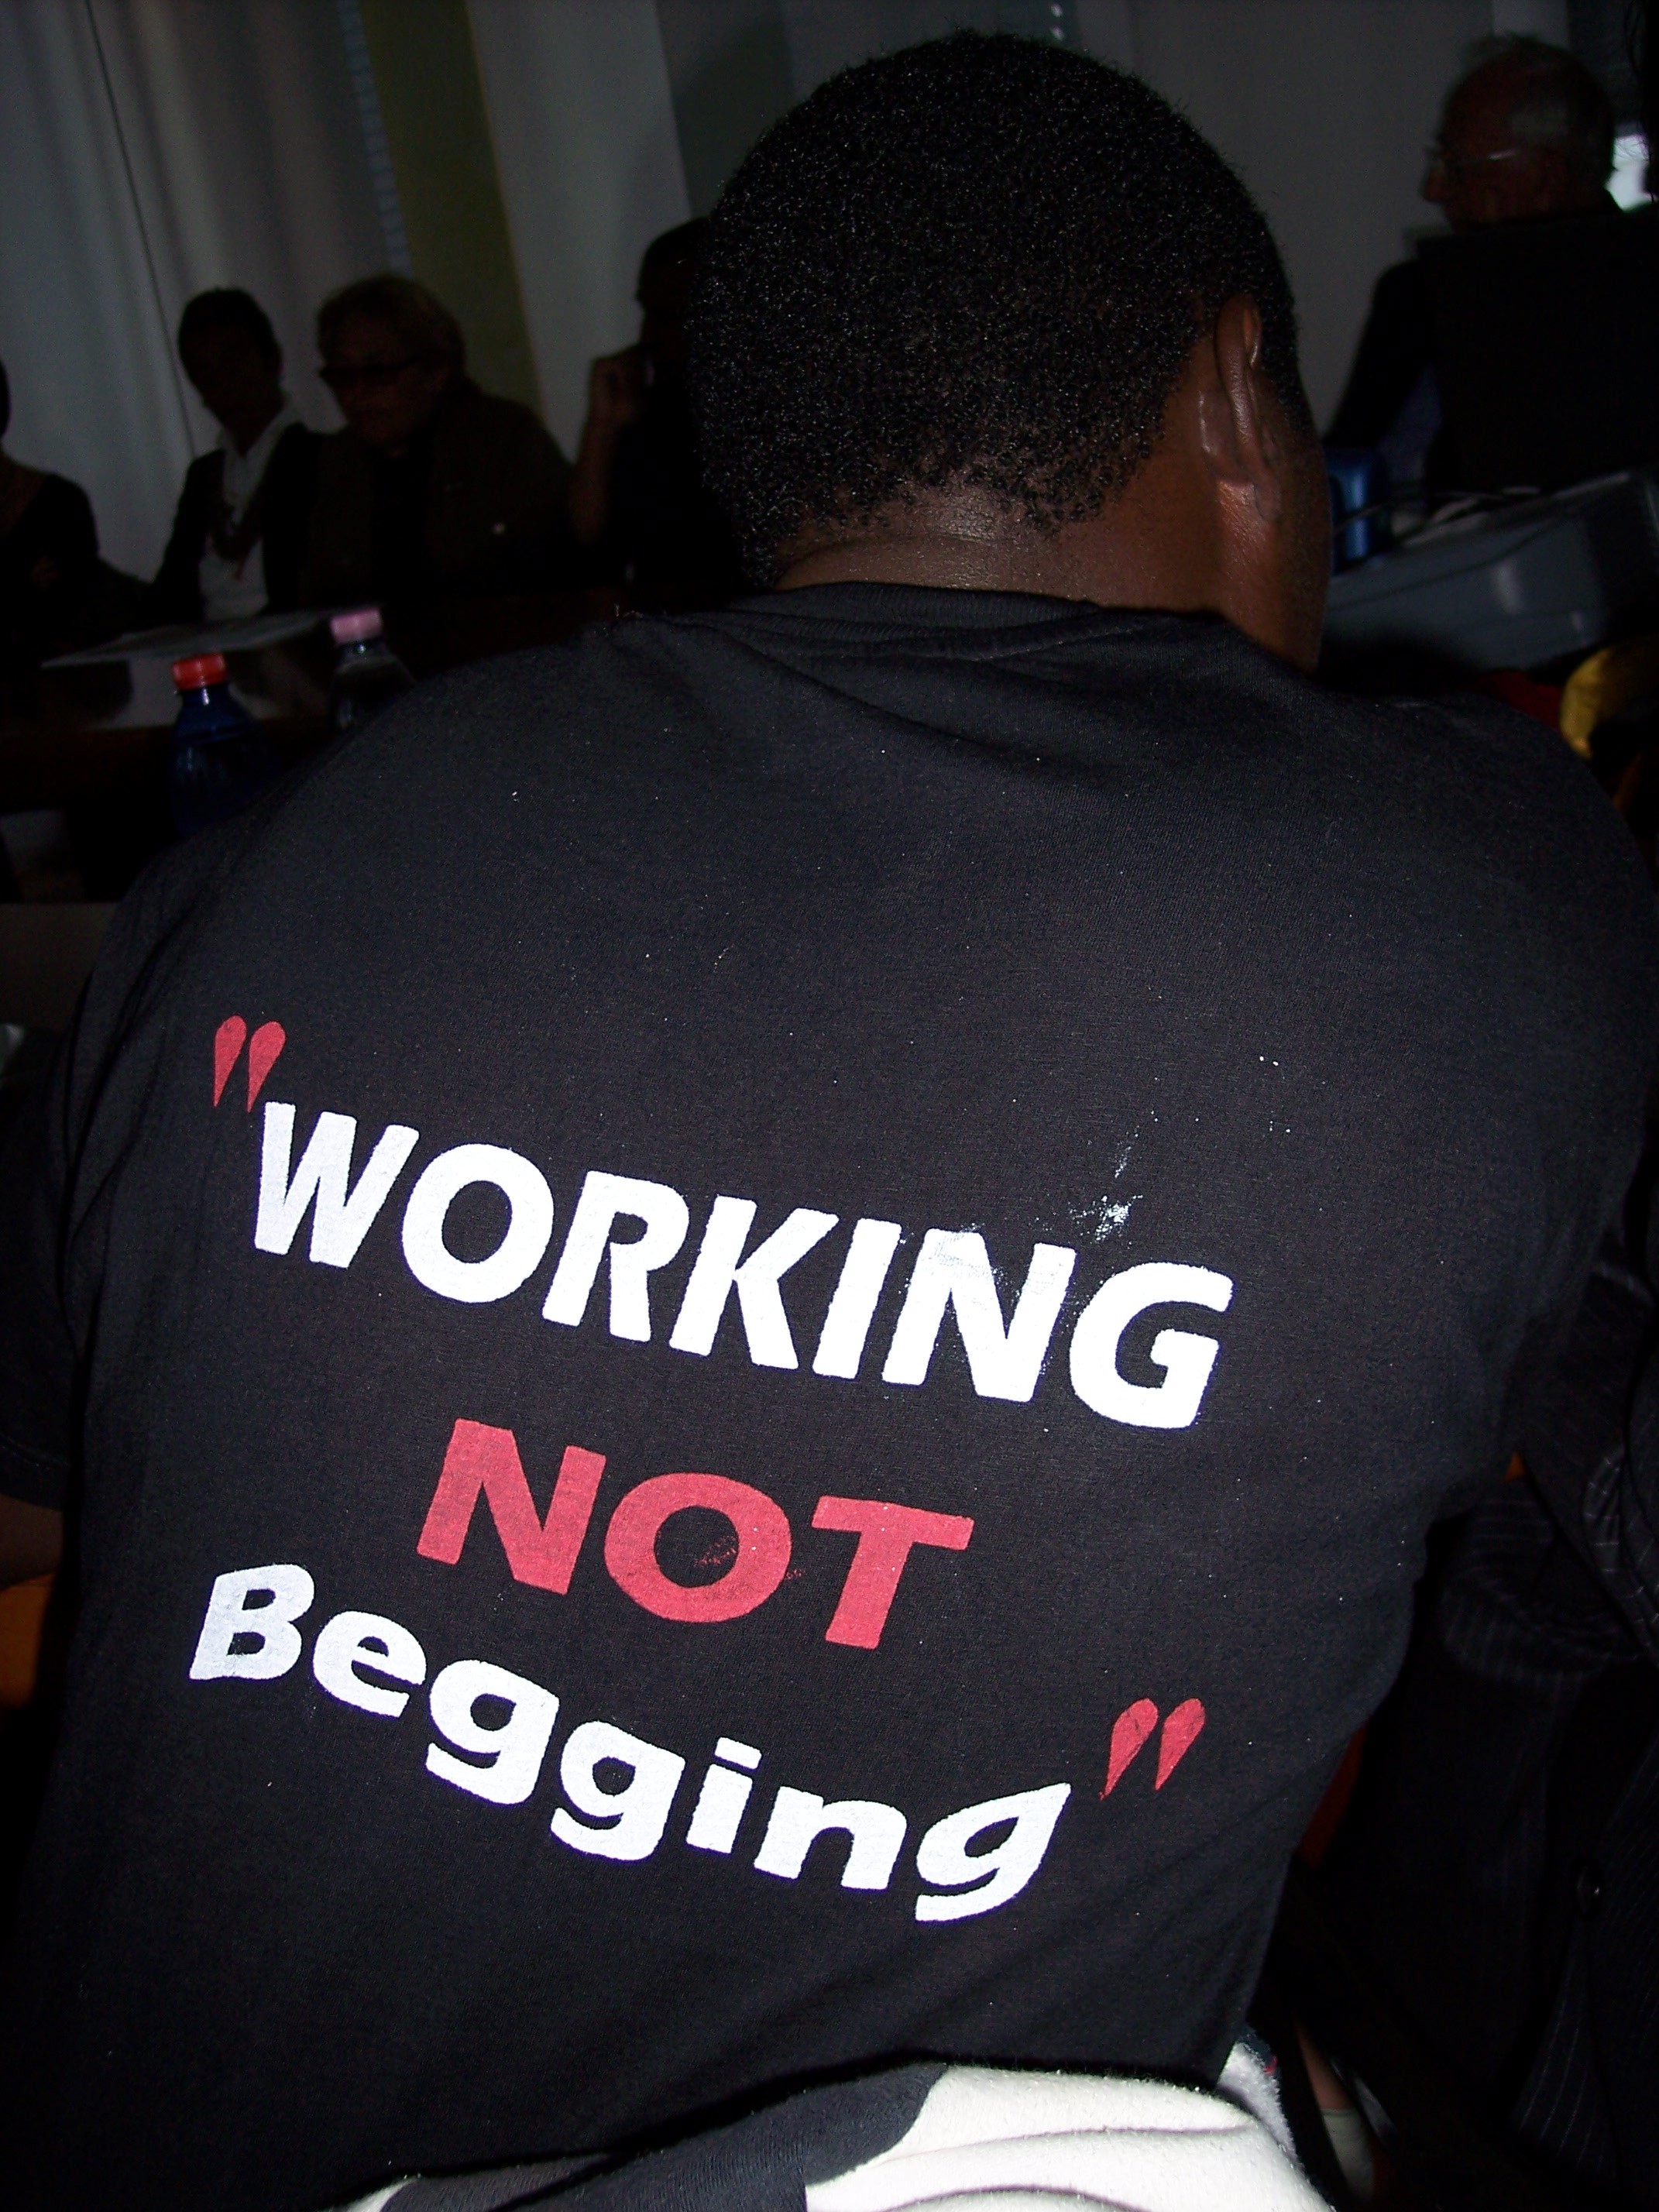 Working not begging è lo slogan di chi vende giornali per guadagnarsi da vivere negli slum di Nairobi [Kenya]. Ora la loro sopravvivenza è in pericolo